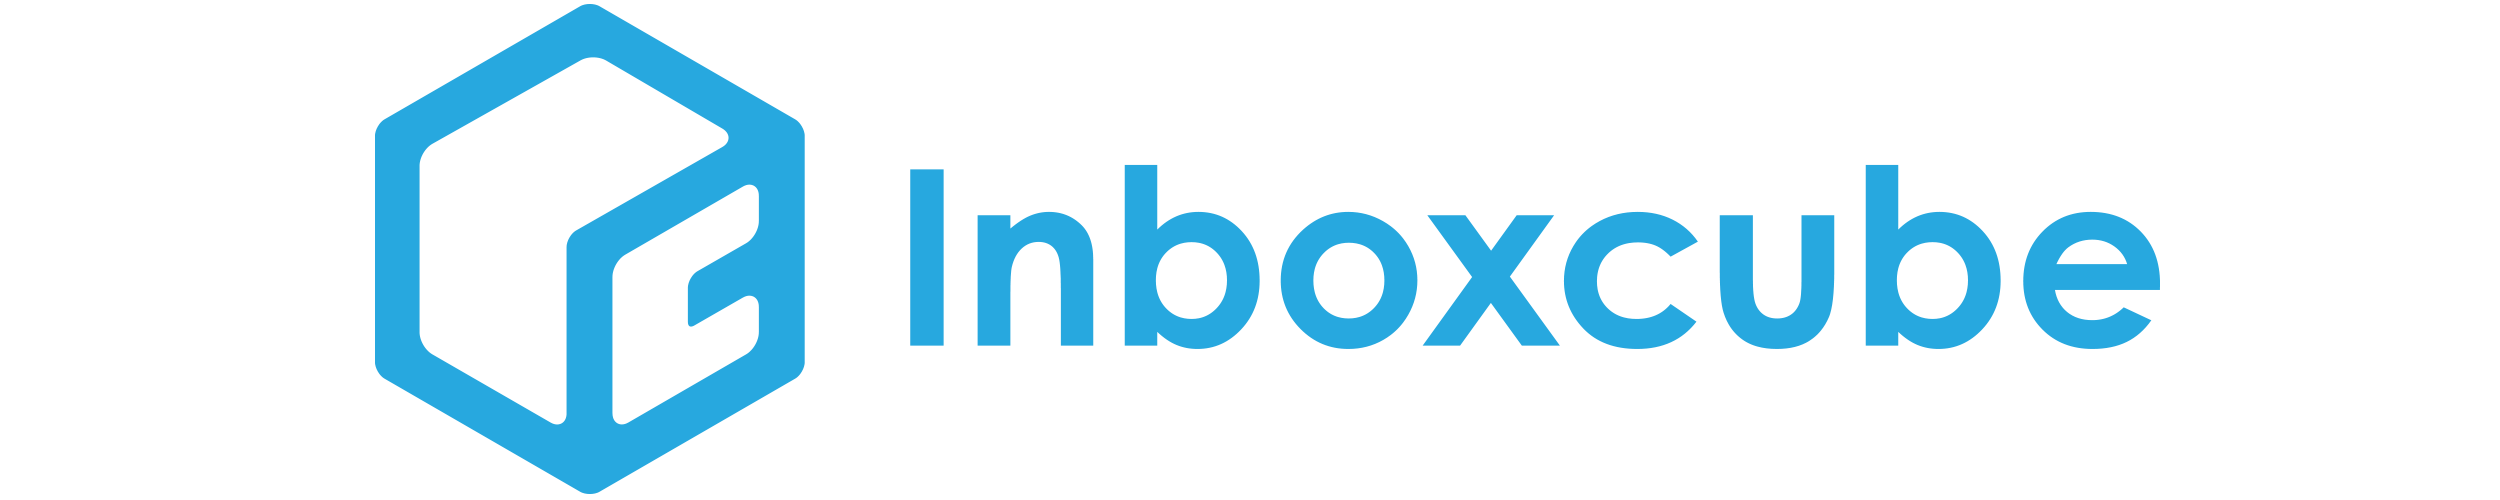 Inboxcube logo